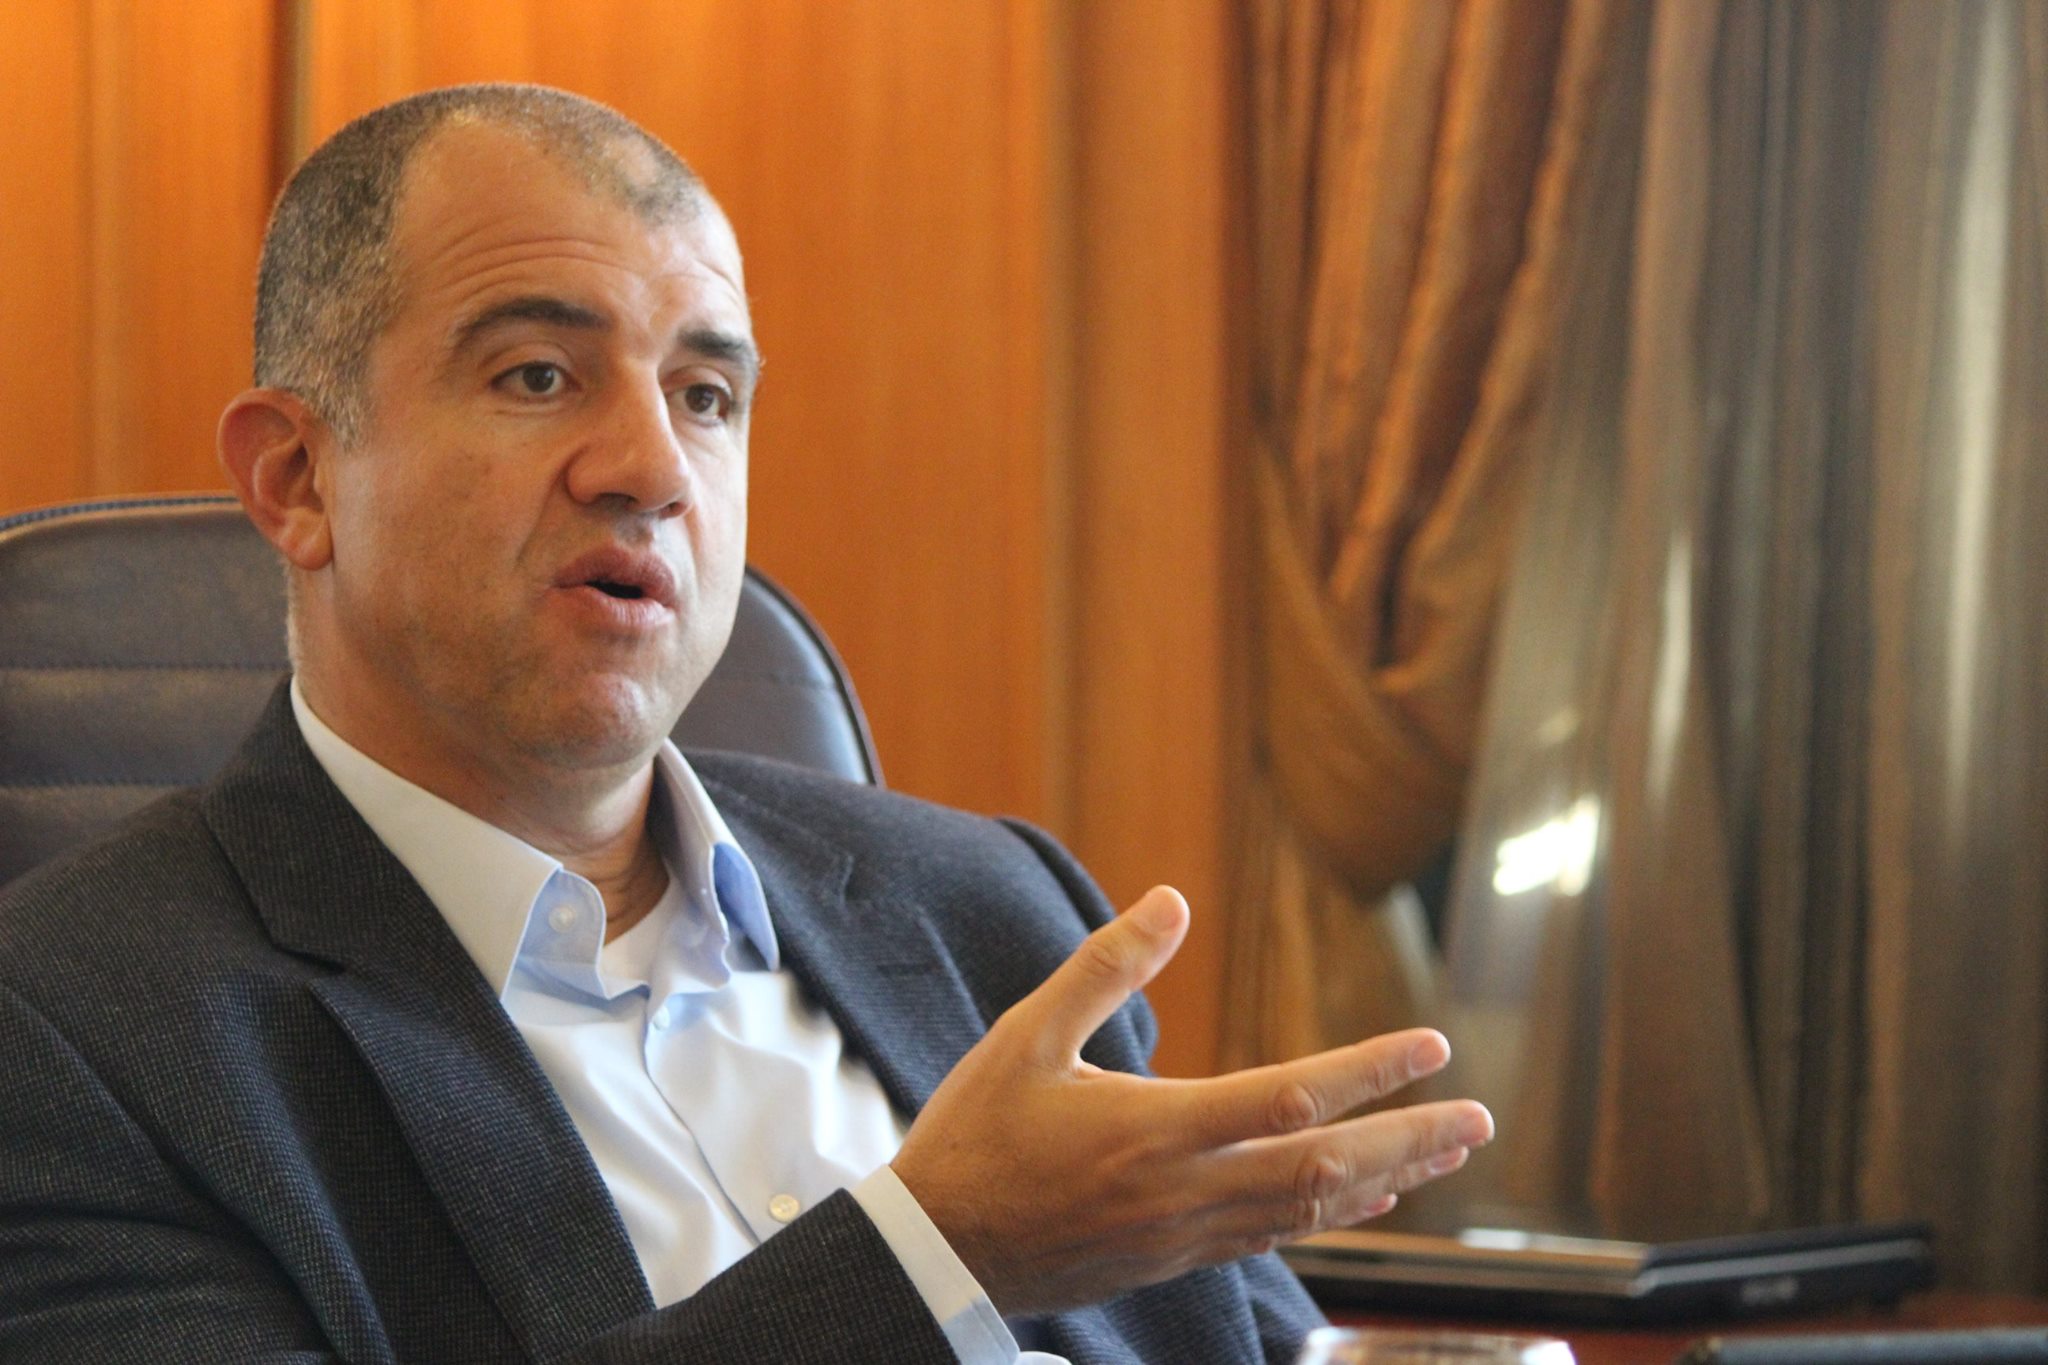   اتحاد الصناعات يطلق مبادرة «مصر تصنع» خلال رمضان